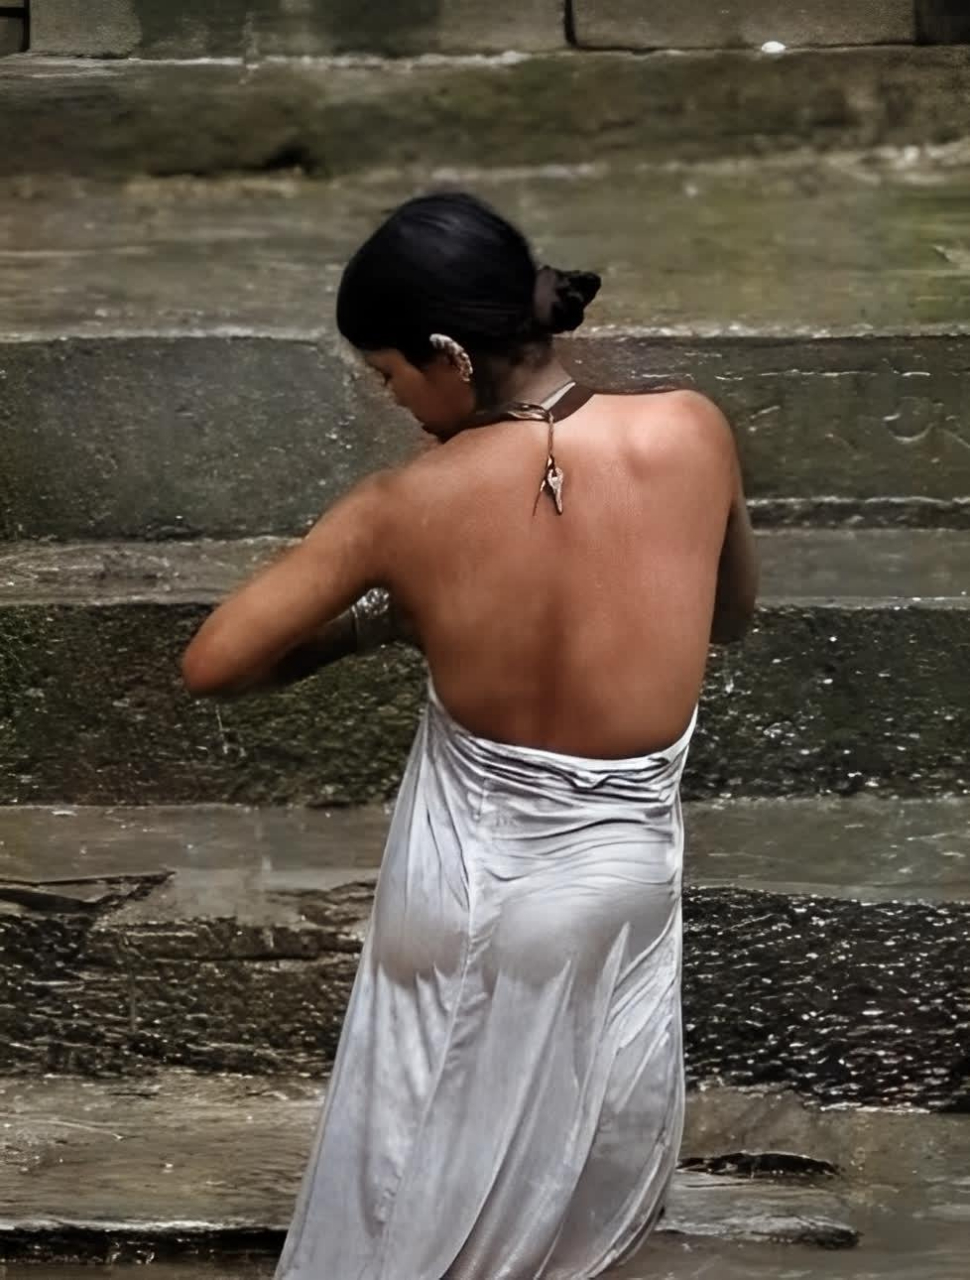 这张照片拍摄于2002年,一位赤裸上身的性感印度美女,刚刚在恒河的水里